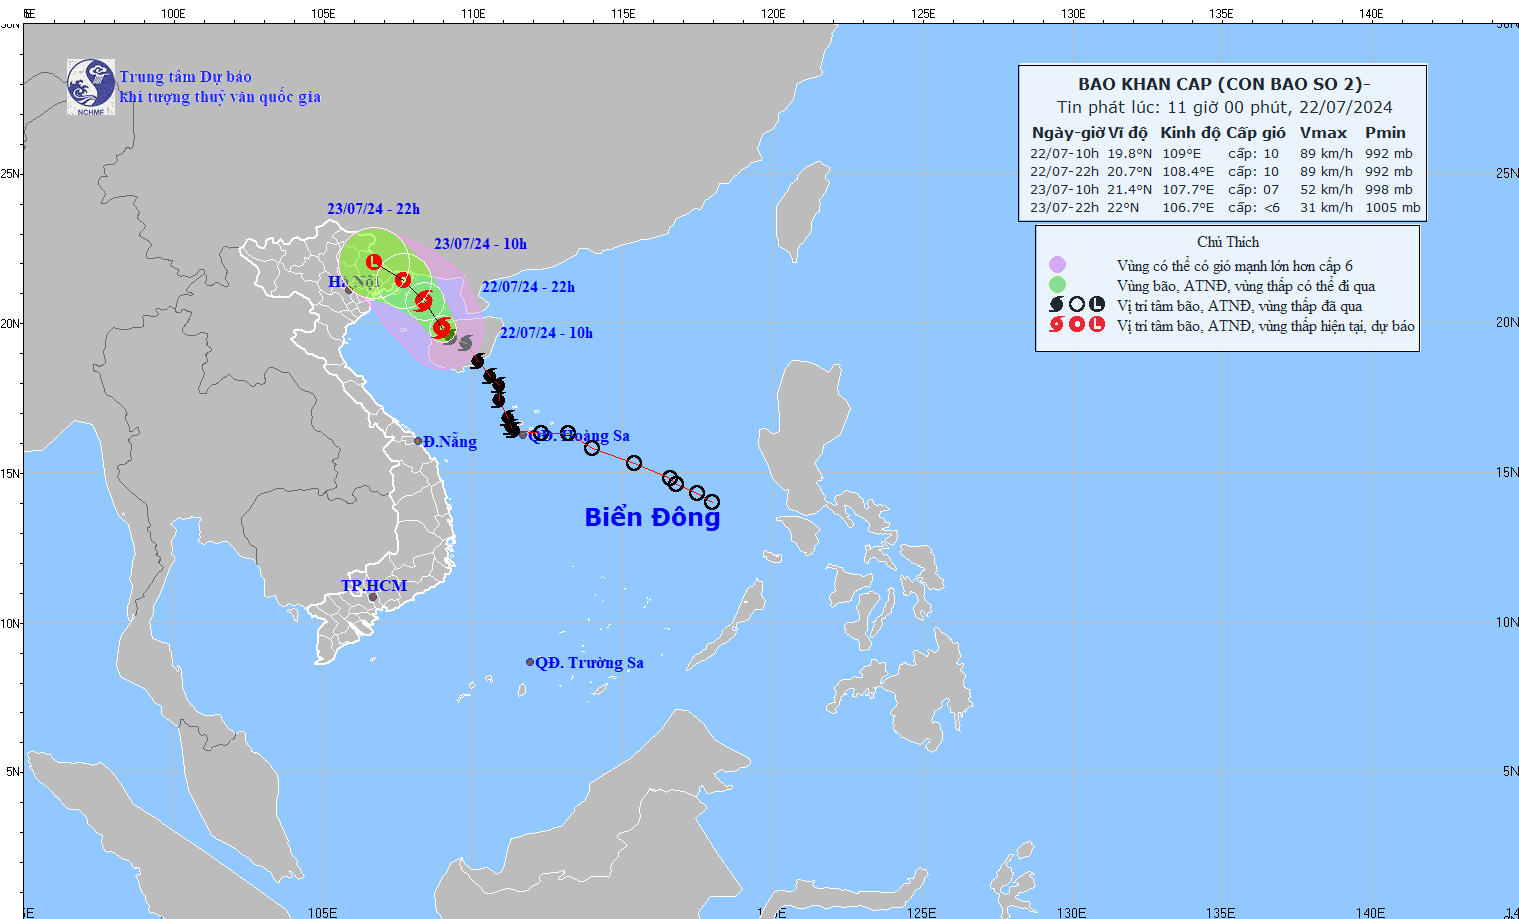 Dự báo bão số 2: Gió vùng tâm bão giật cấp 12, ven biển từ Quảng Ninh đến Nam Định đề phòng triều nước dâng, sóng lớn